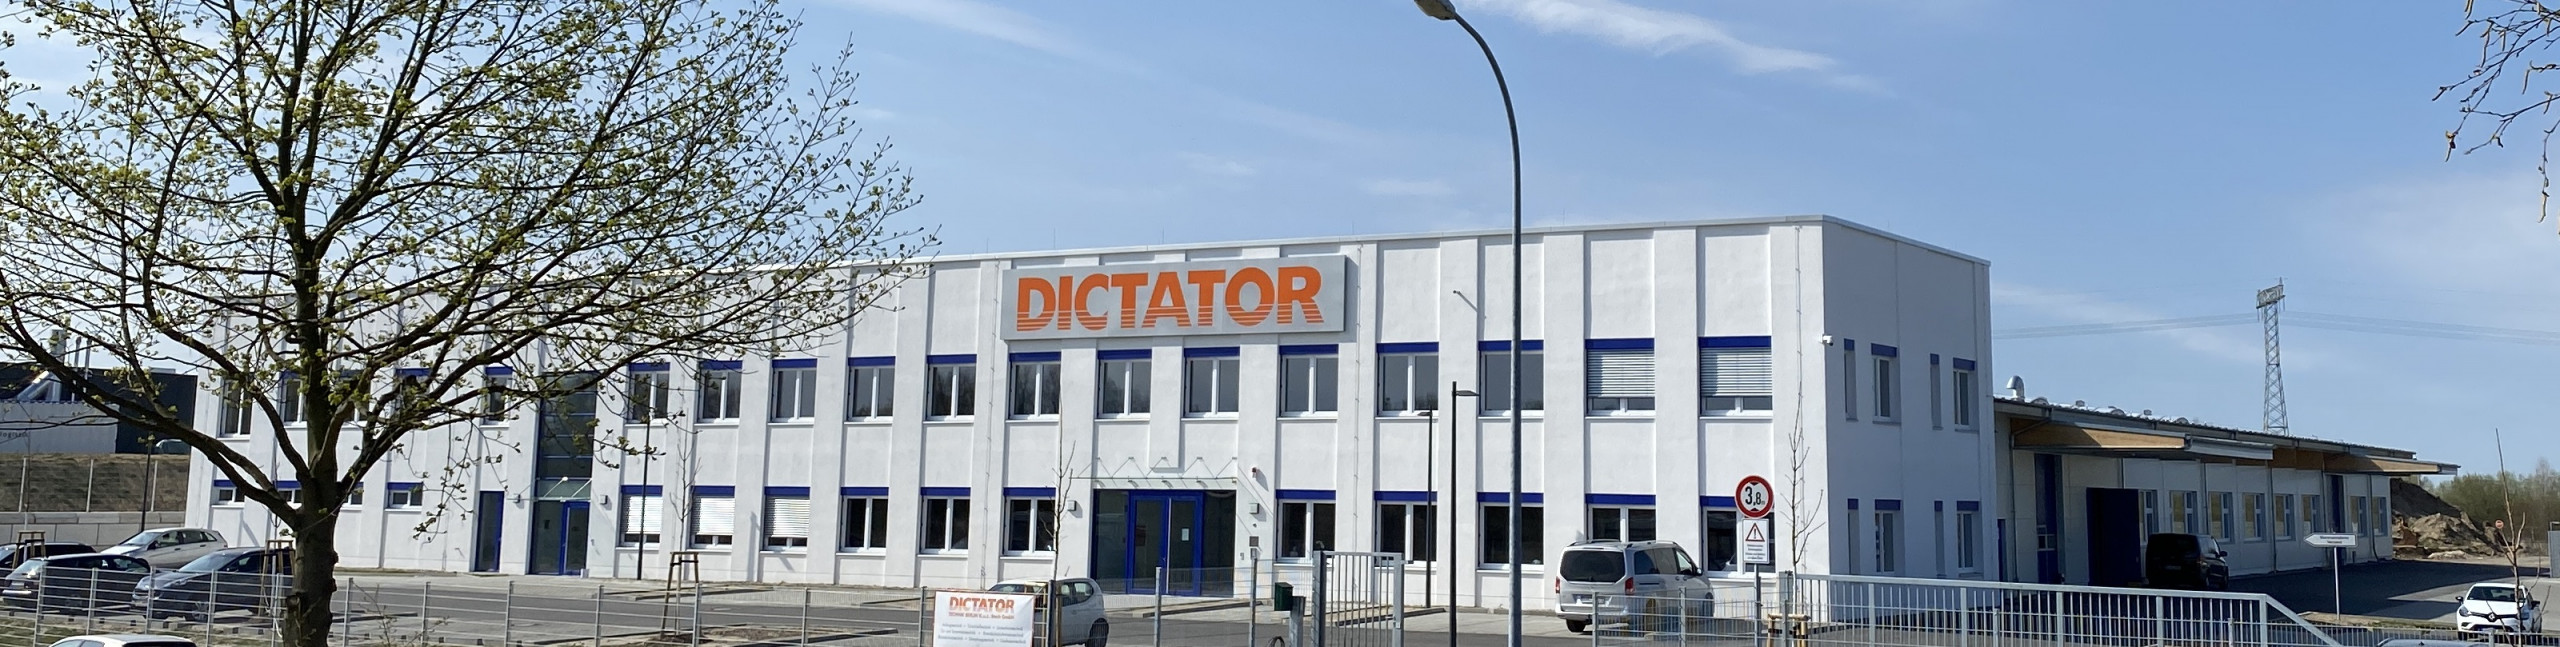 DICTATOR Fertigungsstandort Berlin DICTATOR Produktion 